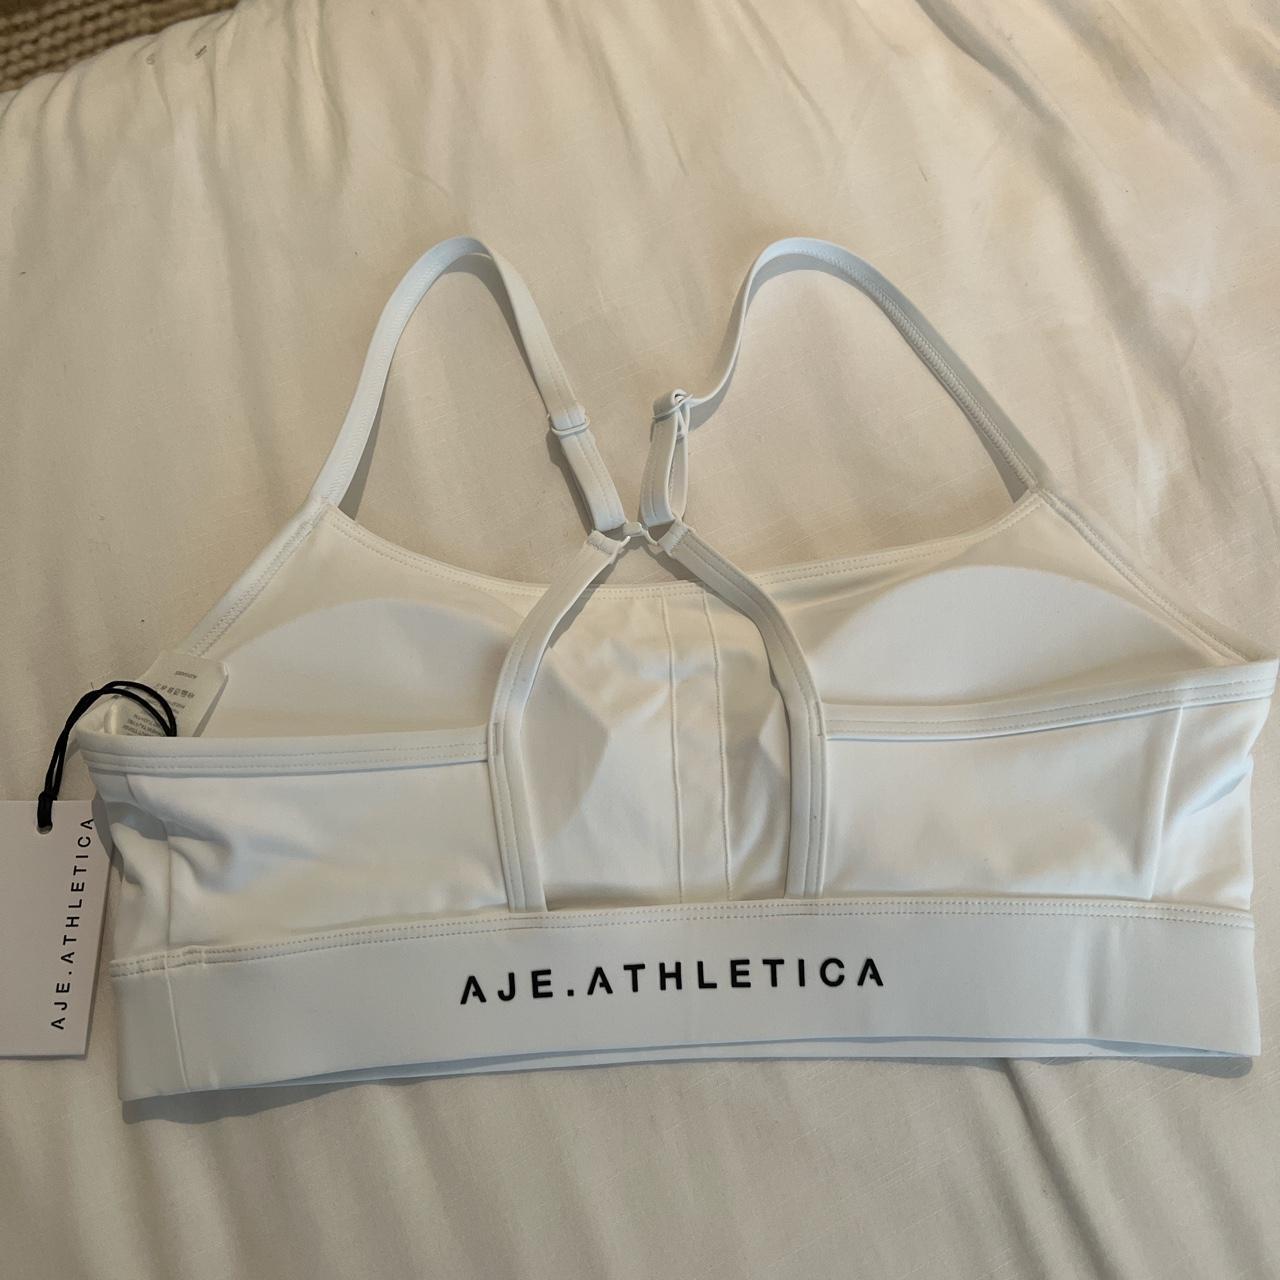 Aje Athletica sports bra Size 10 Brand new with... - Depop